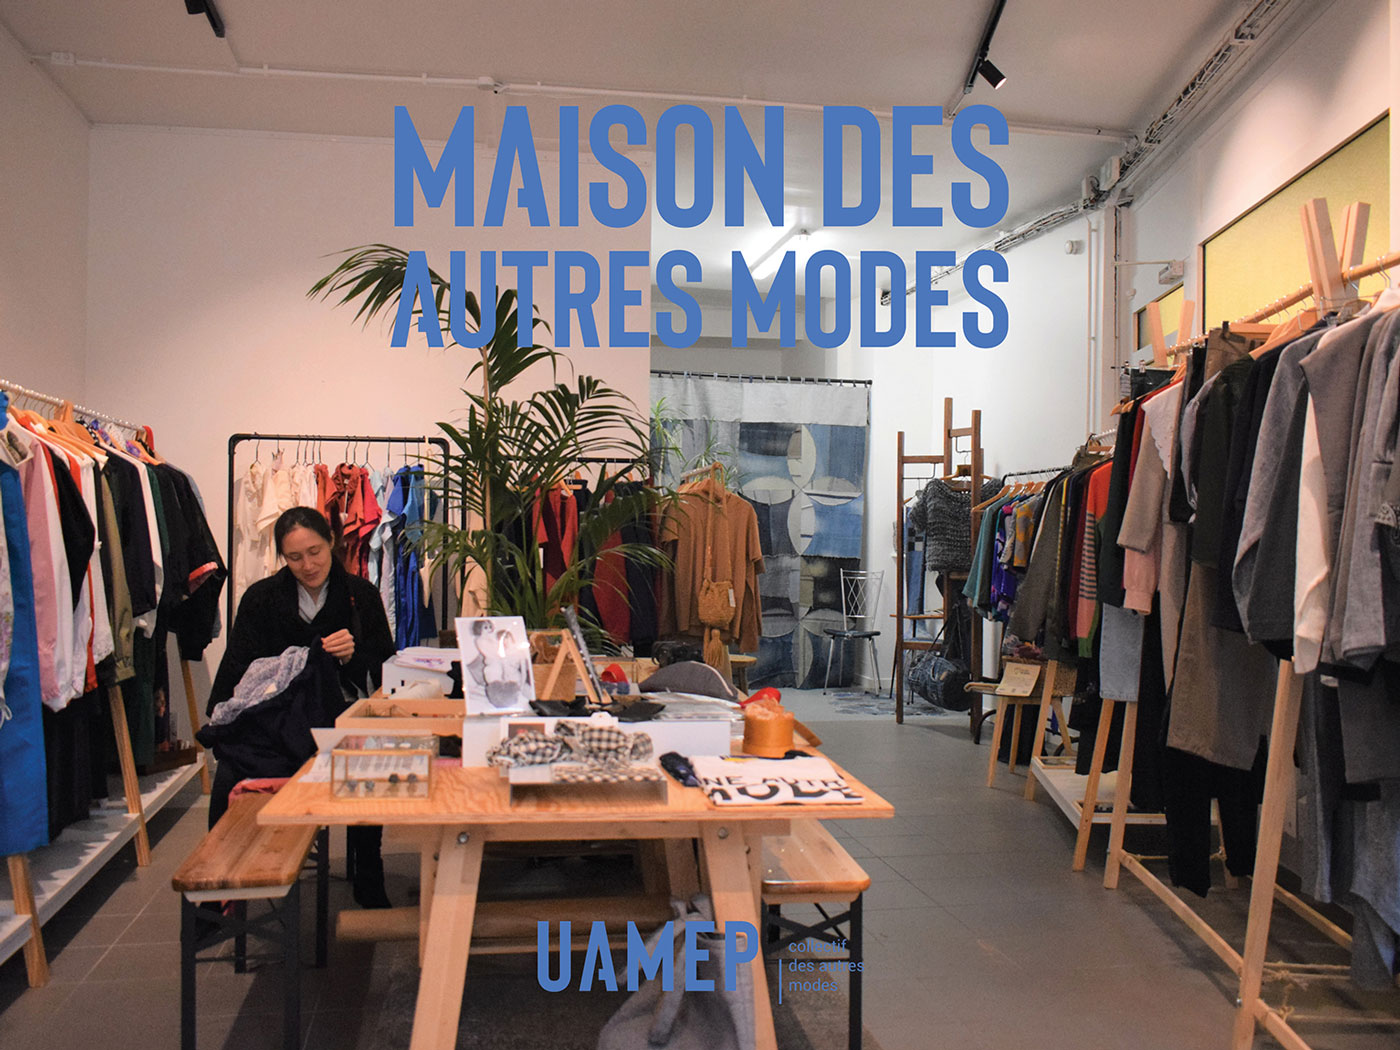 UAMEP - Une Autre Mode Est Possible - Maison des autres modes